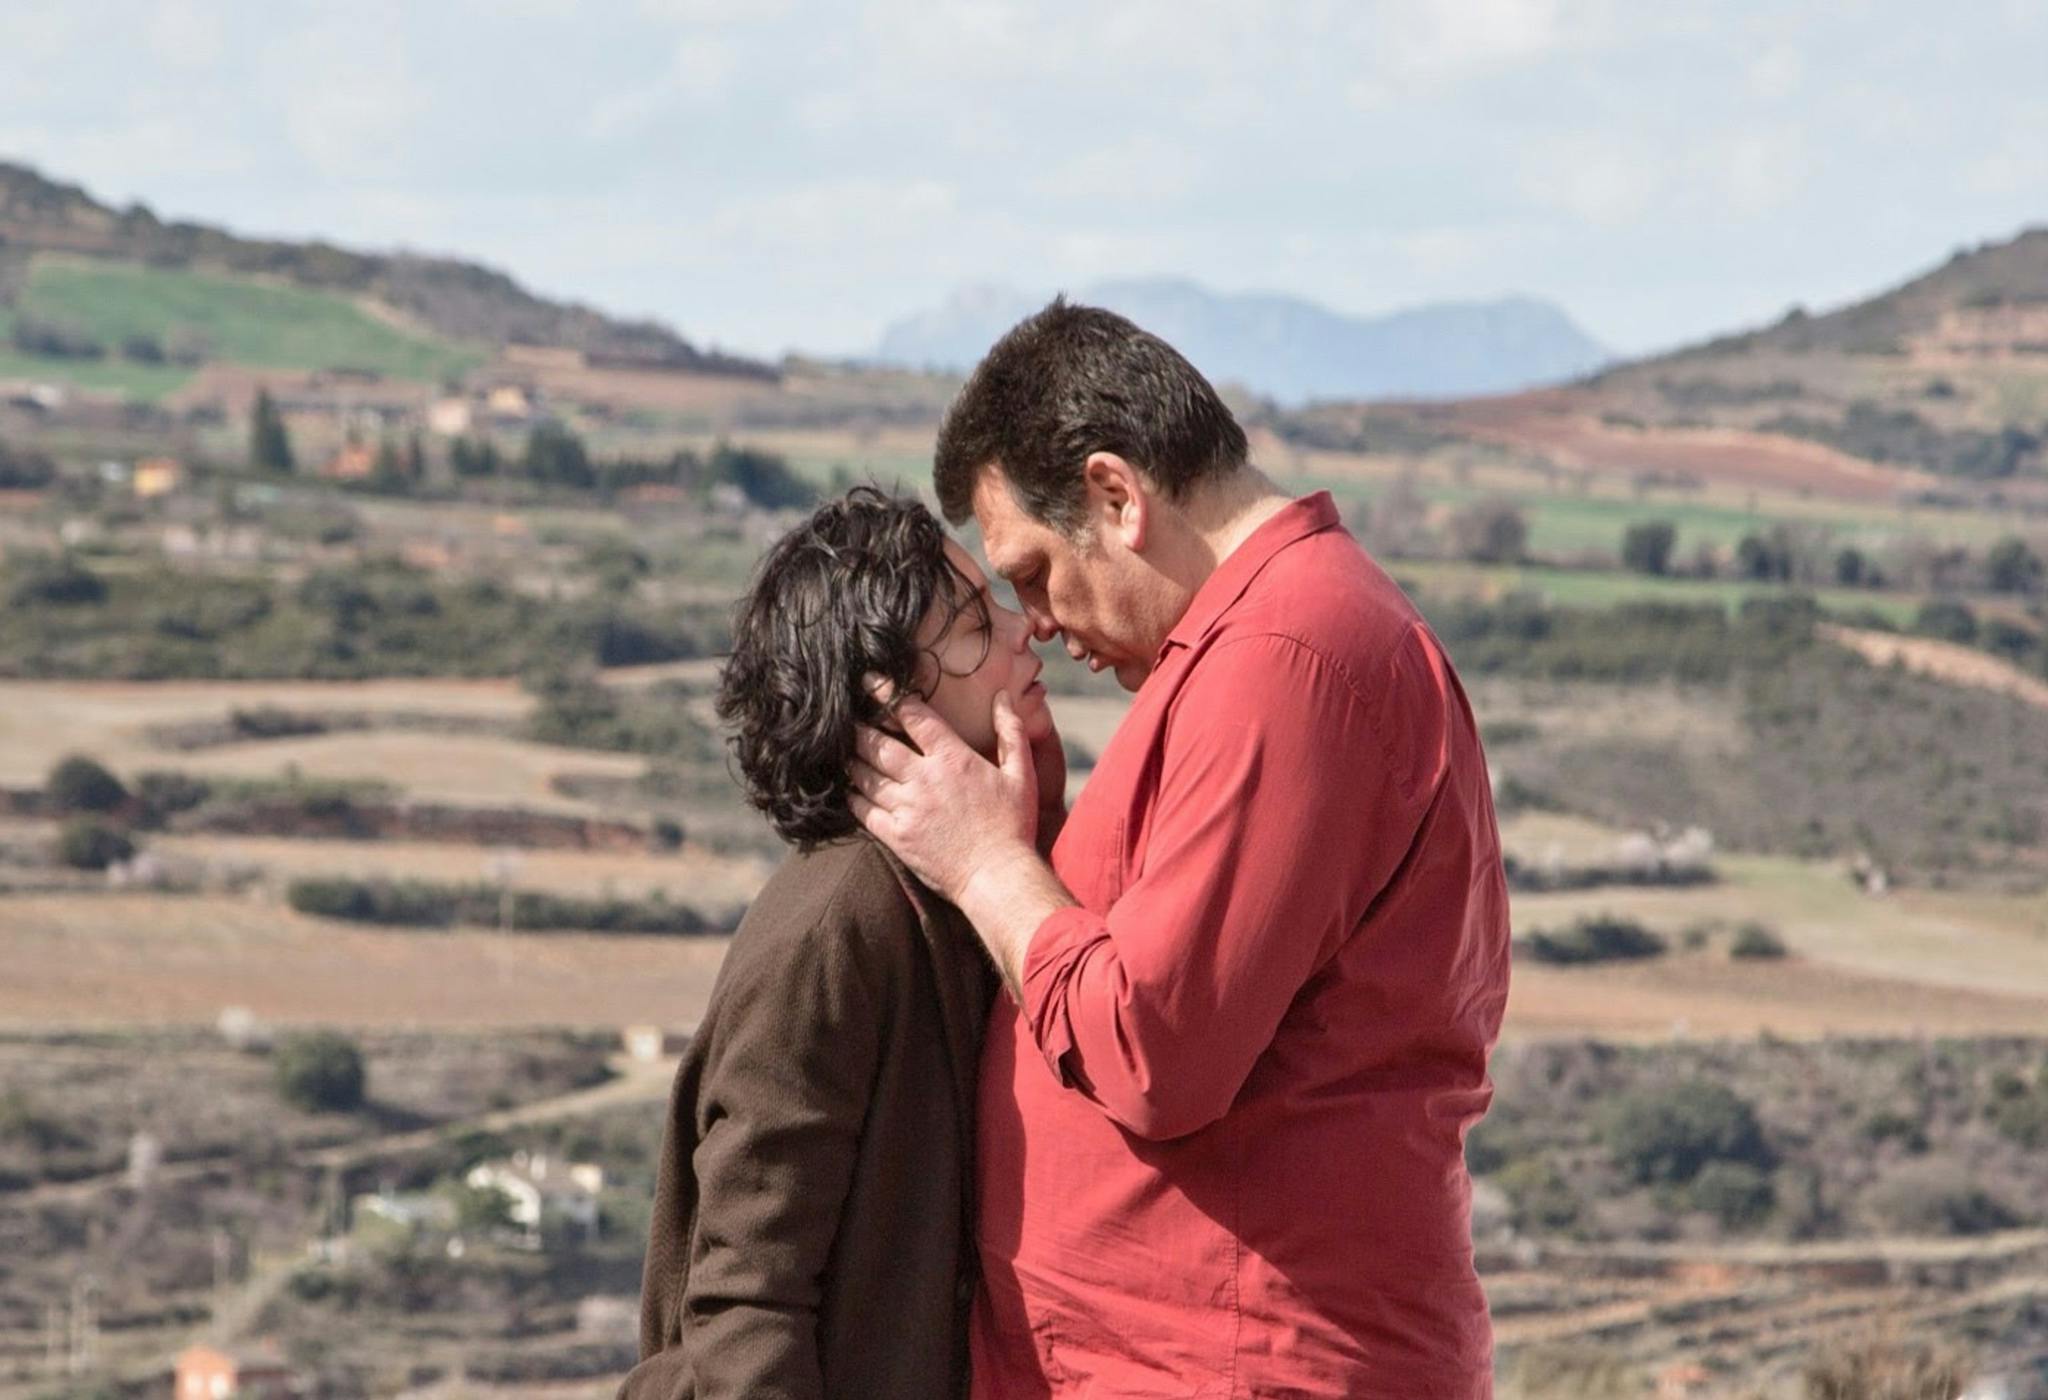 Los actores Laia Costa y Hovik Keuchkerian, en un fotograma promocional de la película 'Un amor'